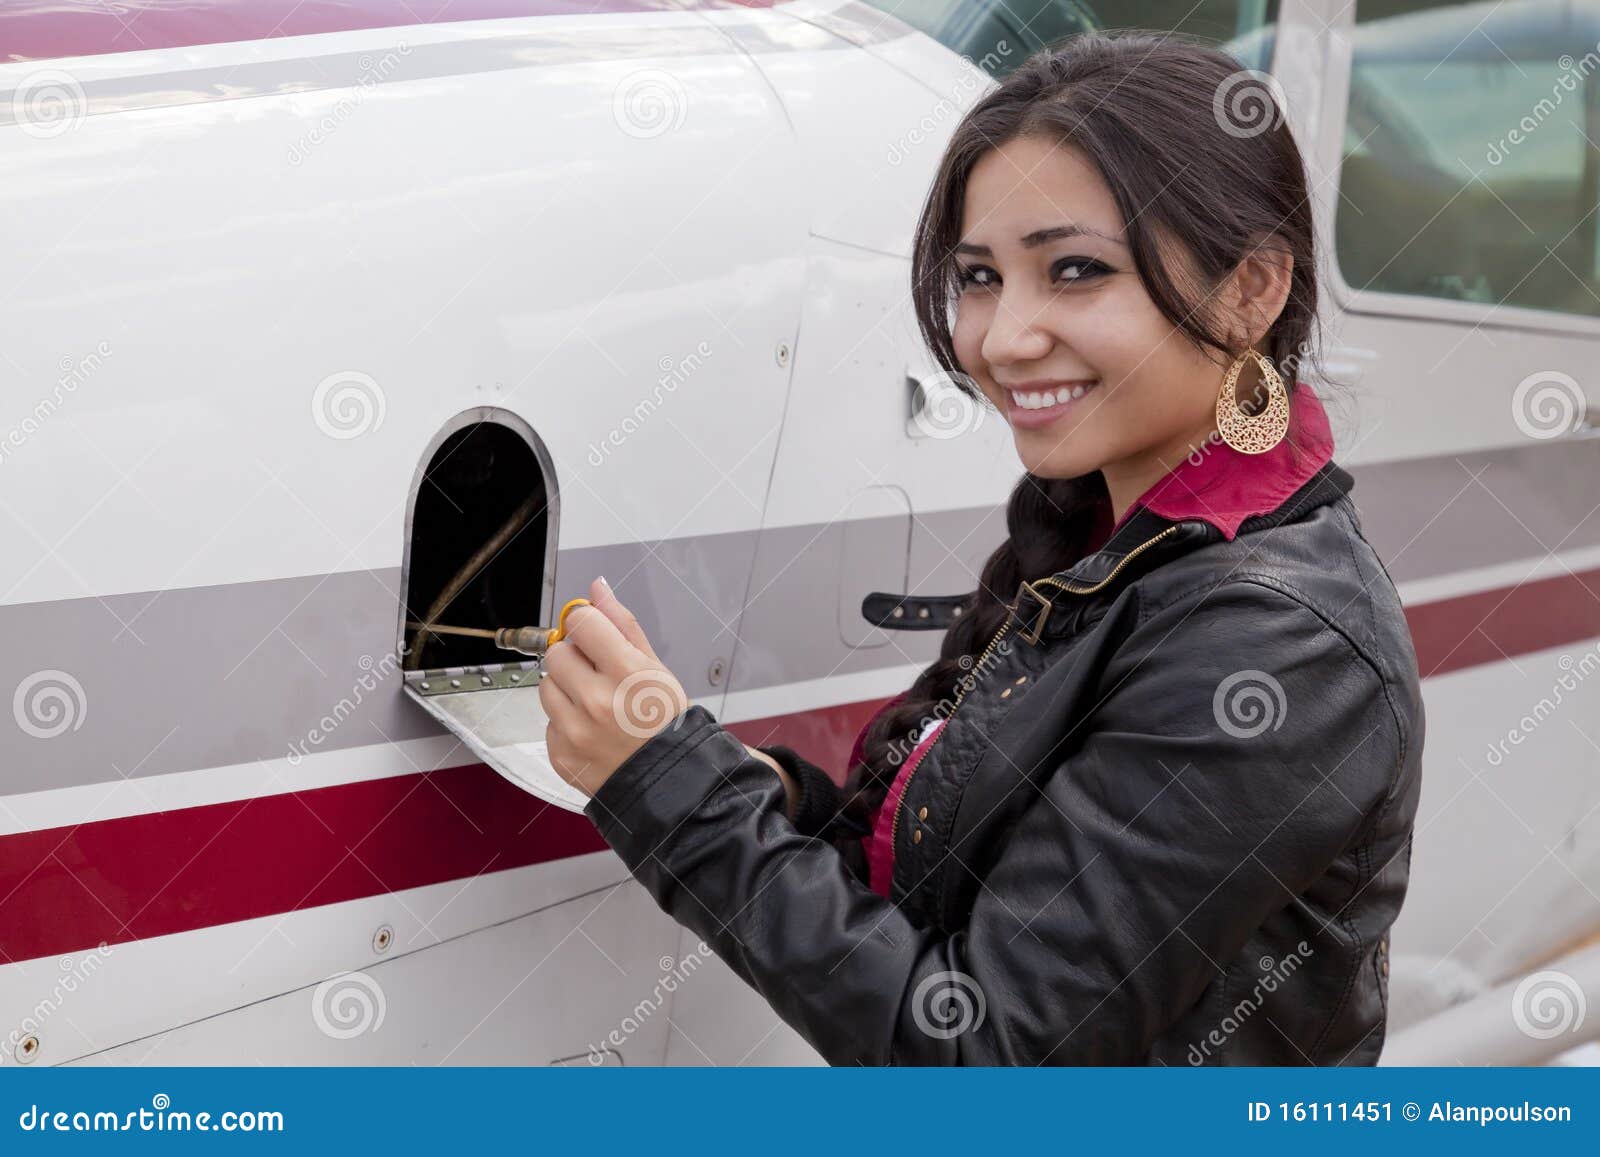 Donna che controlla olio in aeroplano. Una donna sta controllando l'olio in un aeroplano.